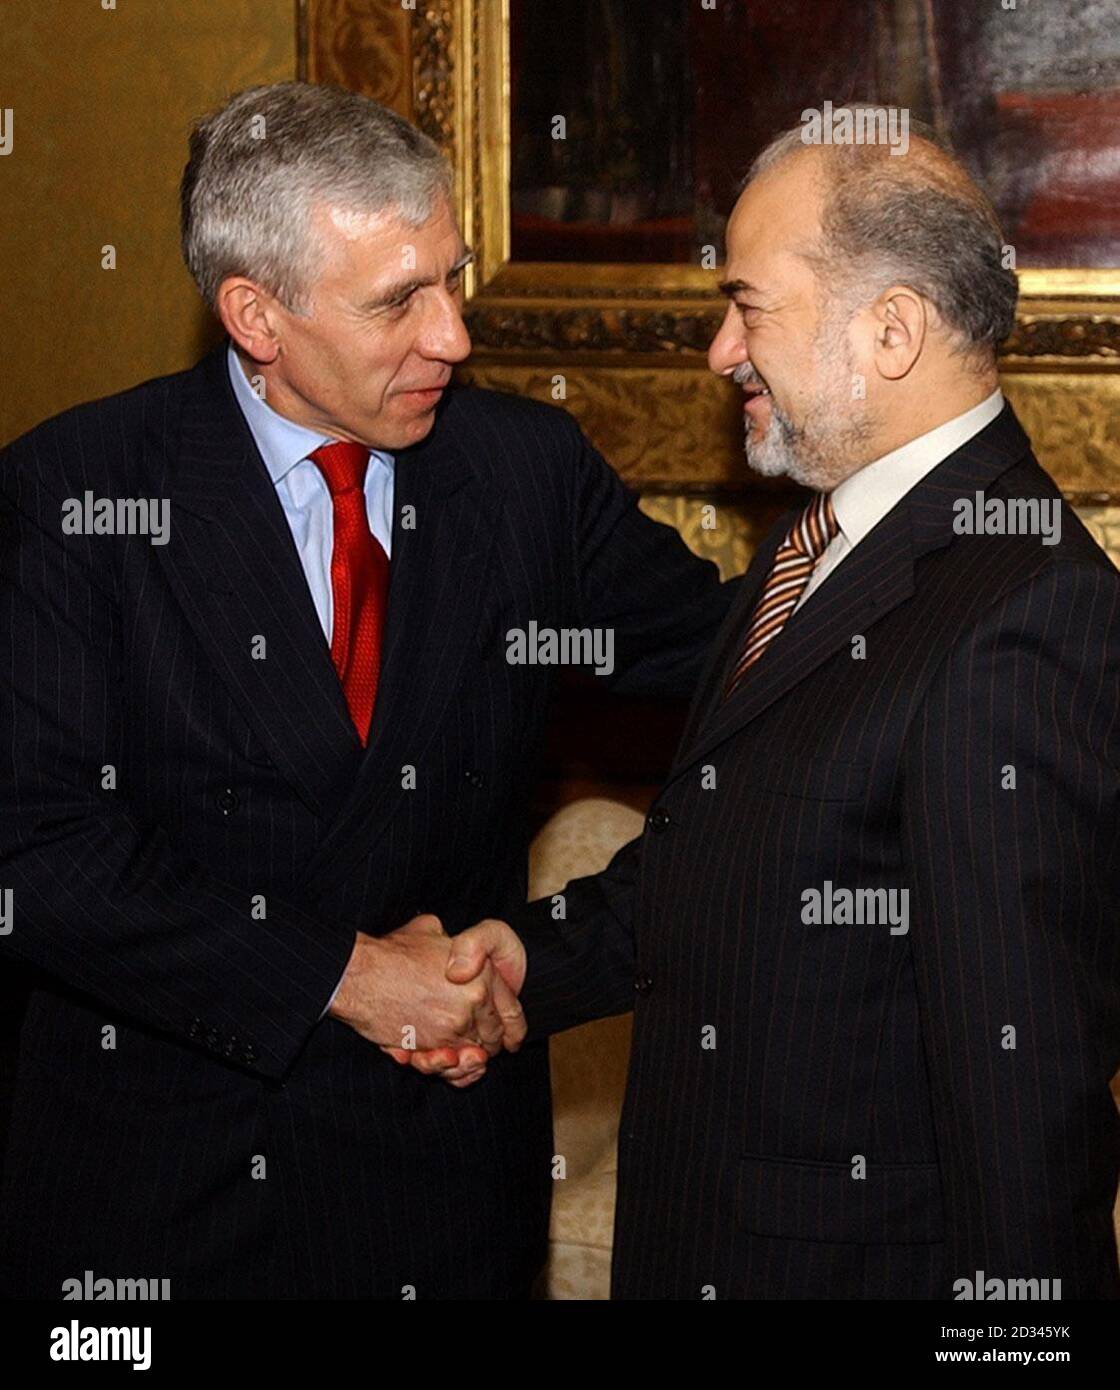 Il Segretario degli Esteri britannico Jack Straw (a sinistra) incontra il Vicepresidente iracheno Ibrahim Ja'Afaari prima di parlare al Ministero degli Esteri di Londra. Foto Stock